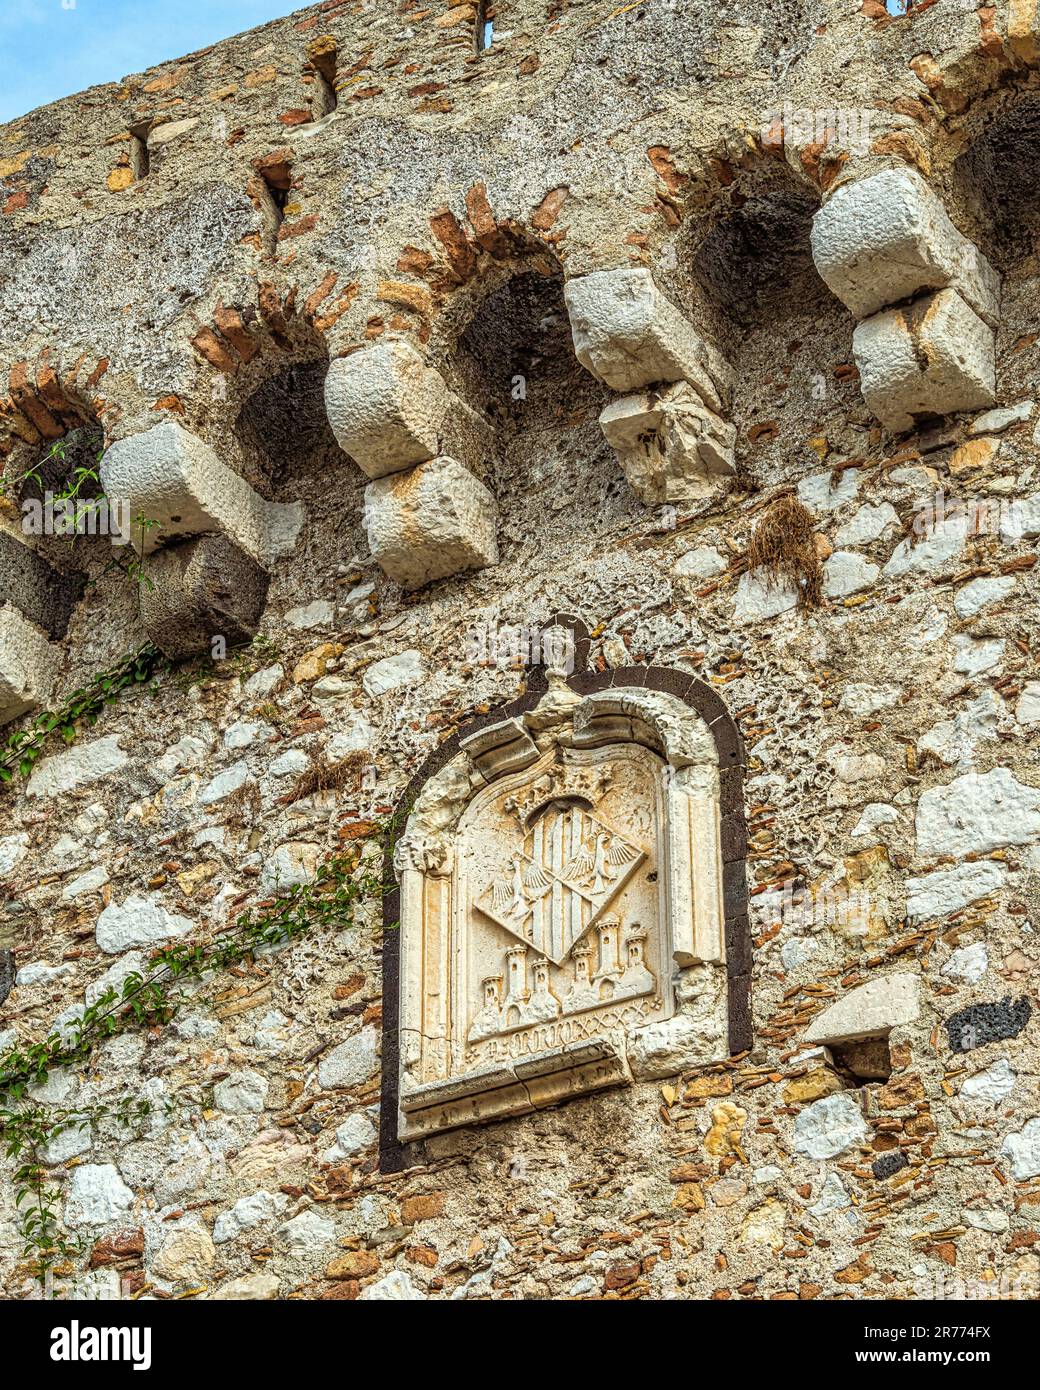 Porta Catania, storico ingresso ad arco nelle mura che proteggevano l'antica città di Taormina. Taormina, provincia di Messina, Sicilia, Italia, Europa Foto Stock